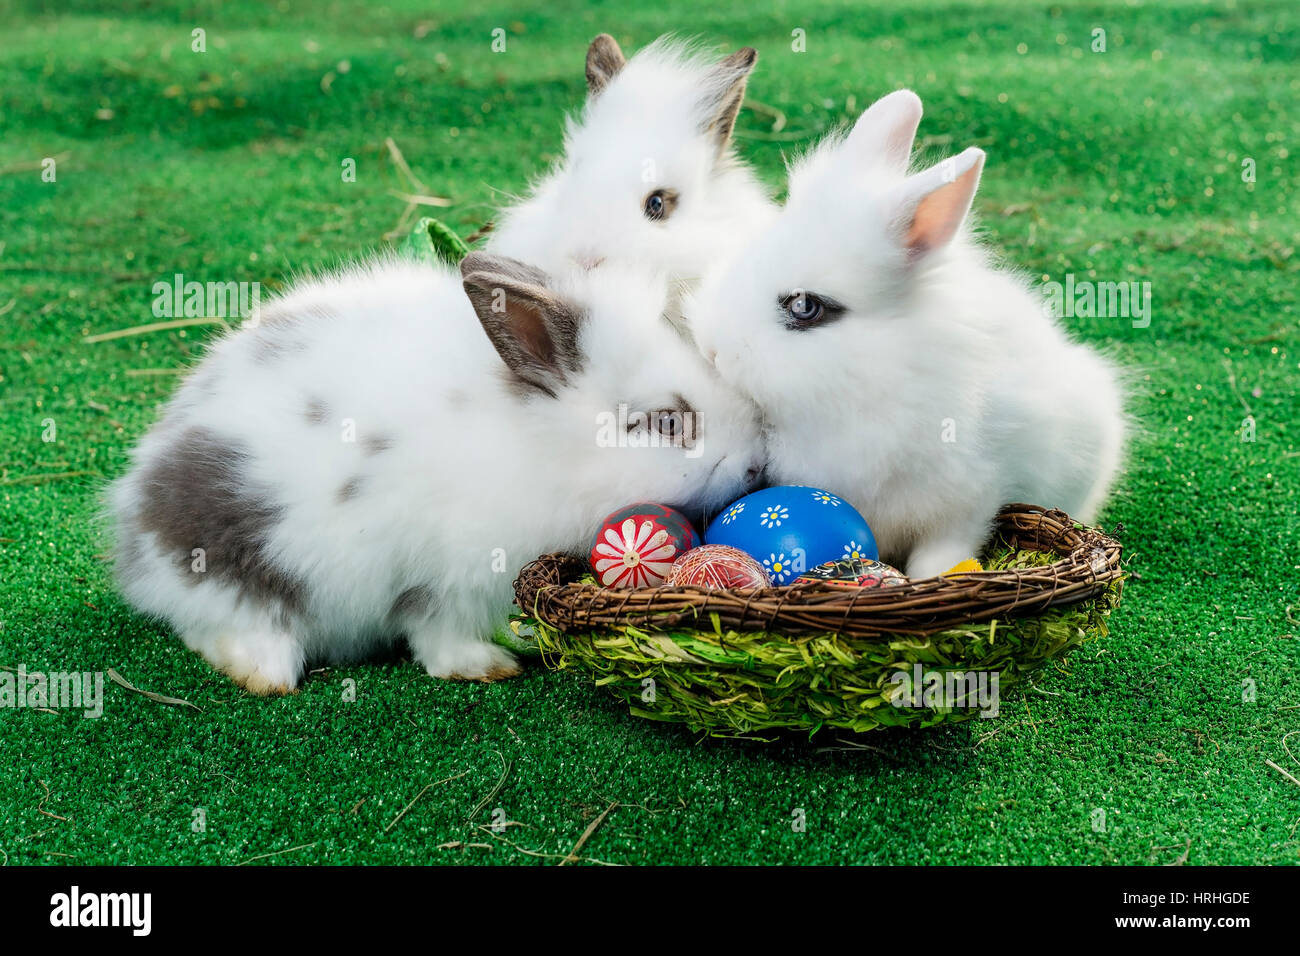 Osterhasen im Osternest - easter rabbits in easter nest Stock Photo